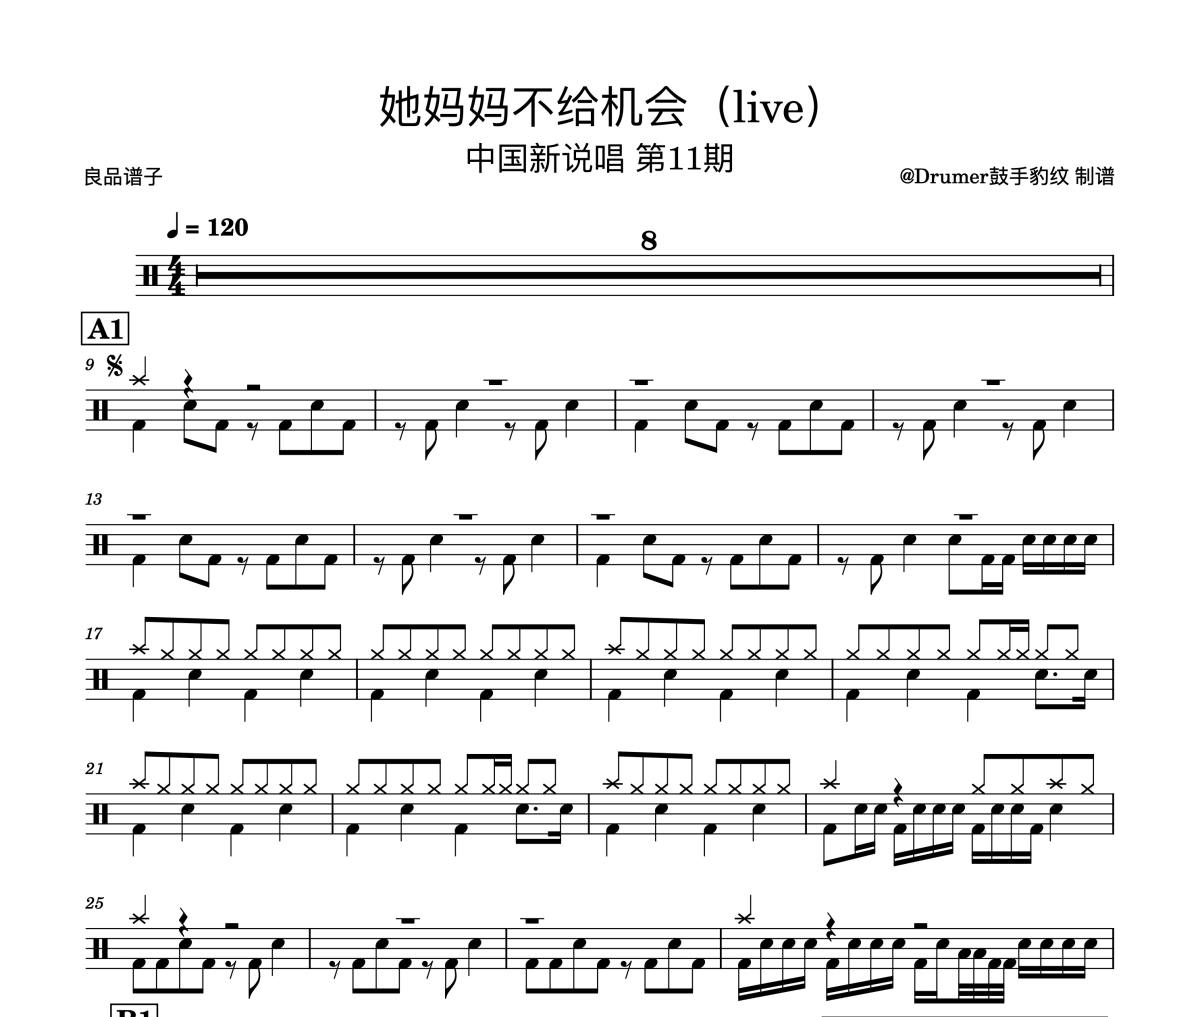 中国新说唱 第11期-她妈妈不给机会(live)架子鼓谱爵士鼓曲谱